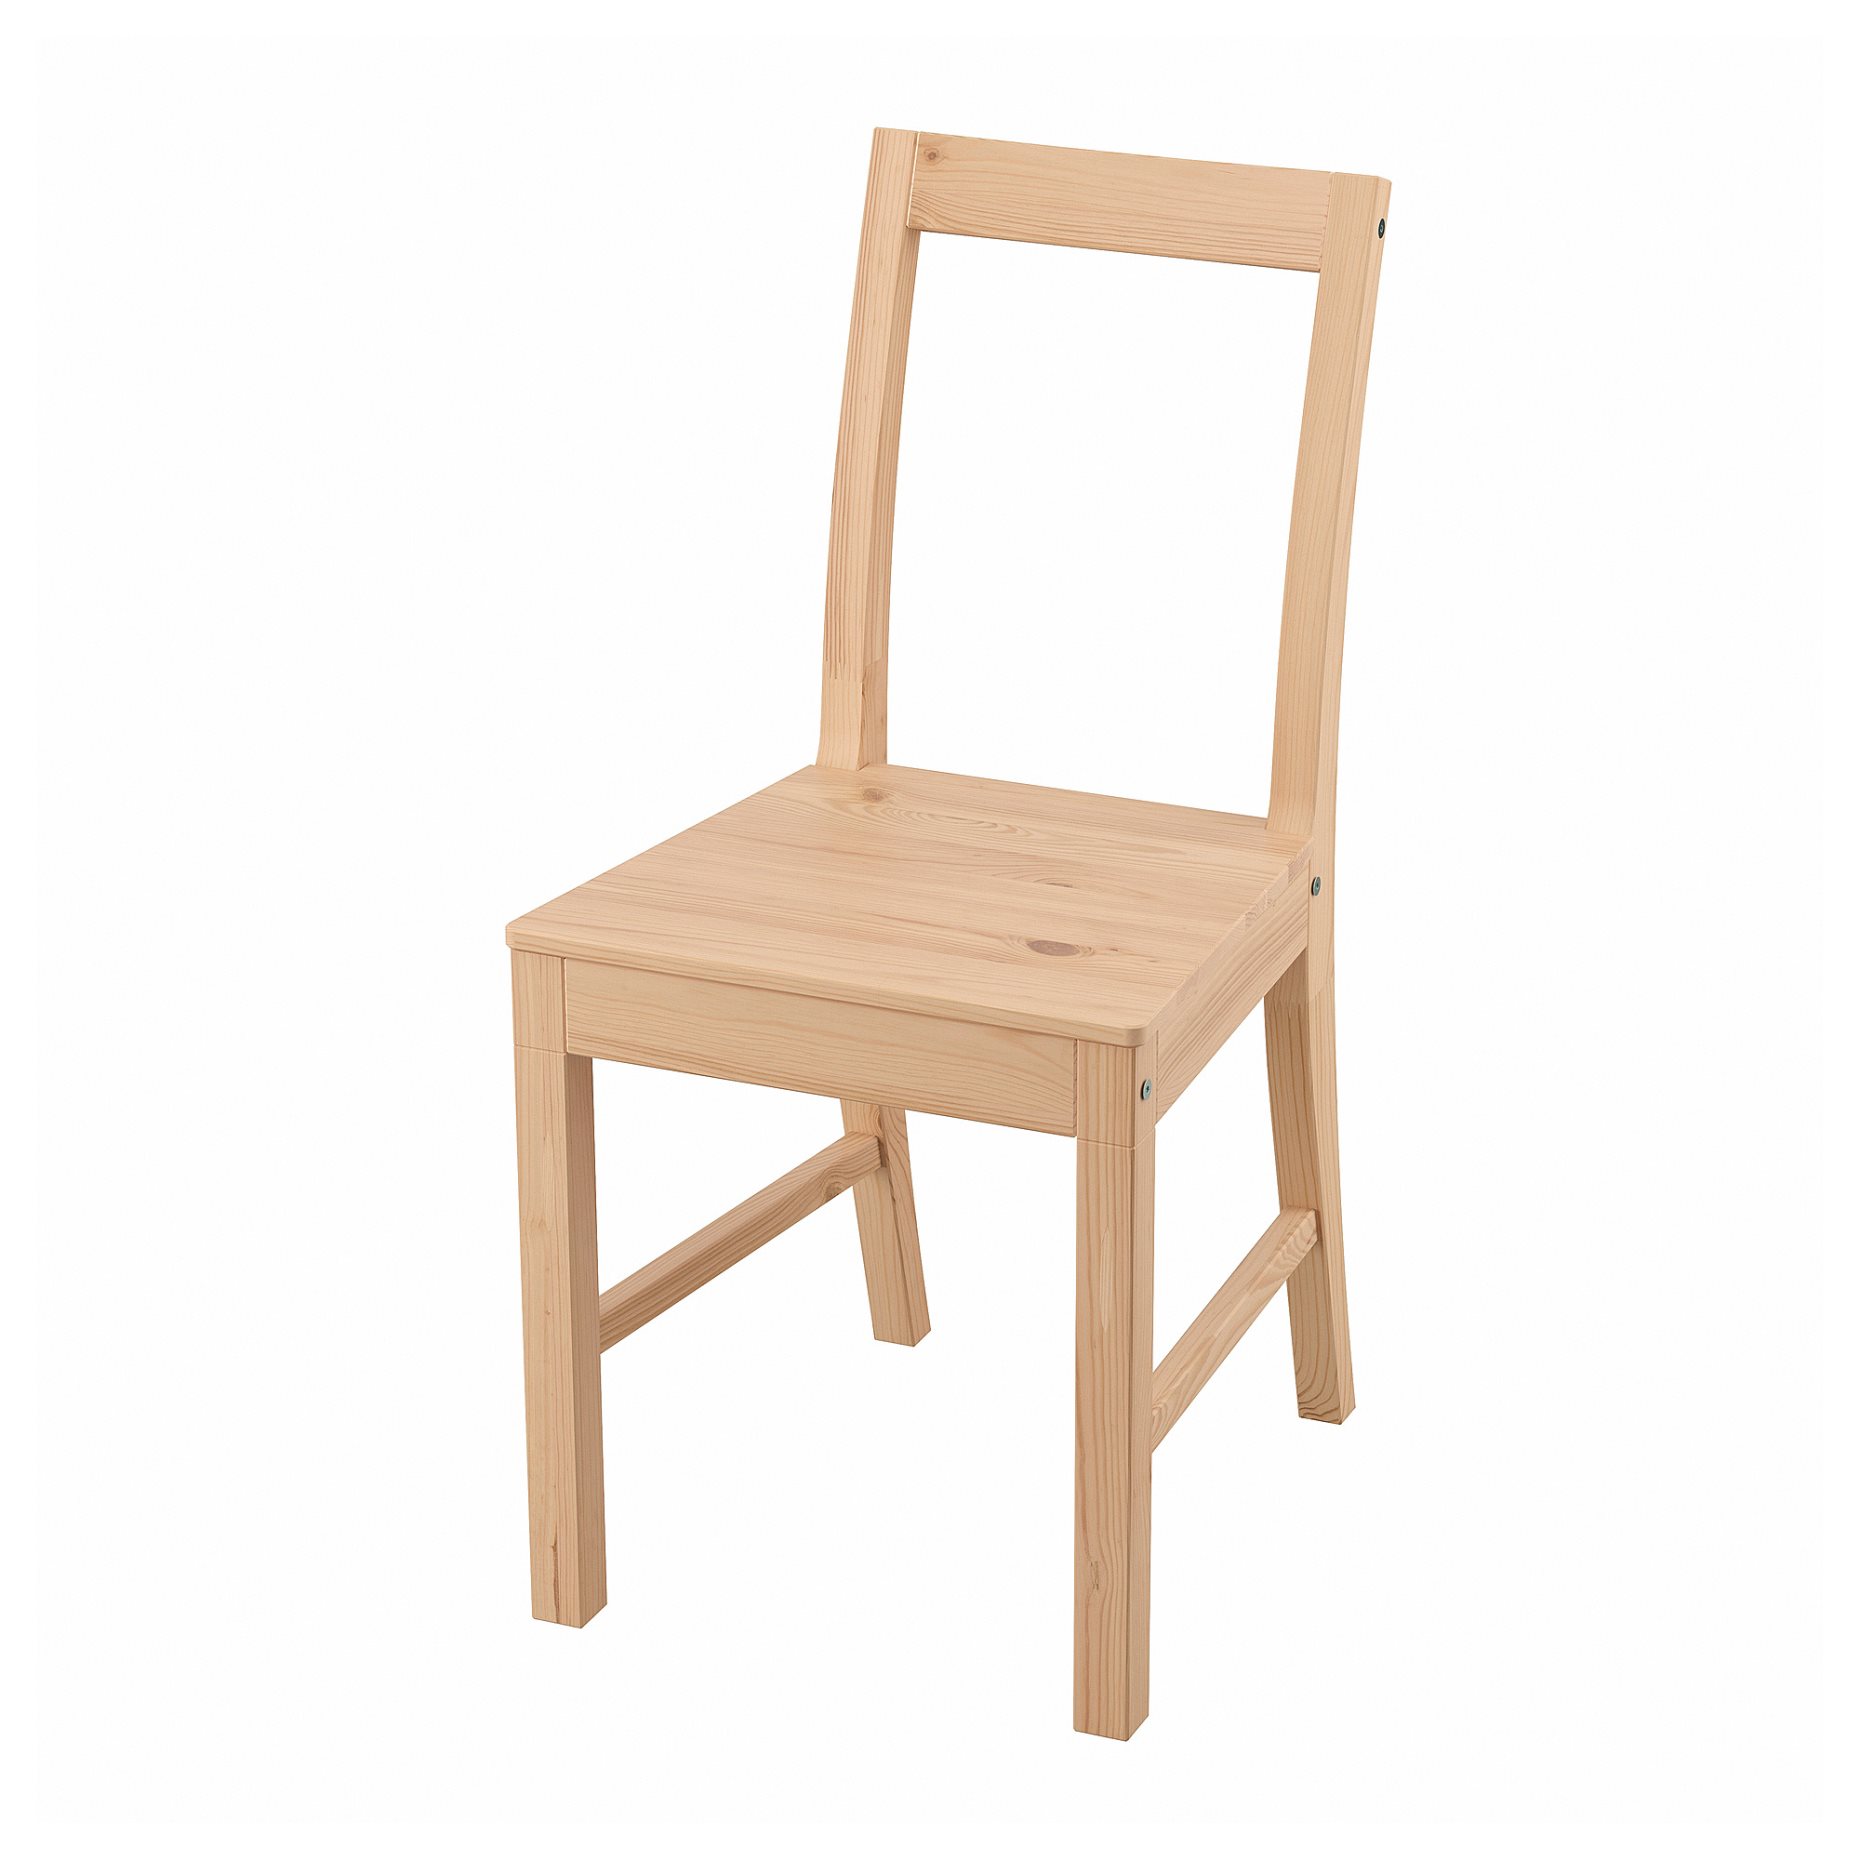 PINNTORP, chair, 005.294.78